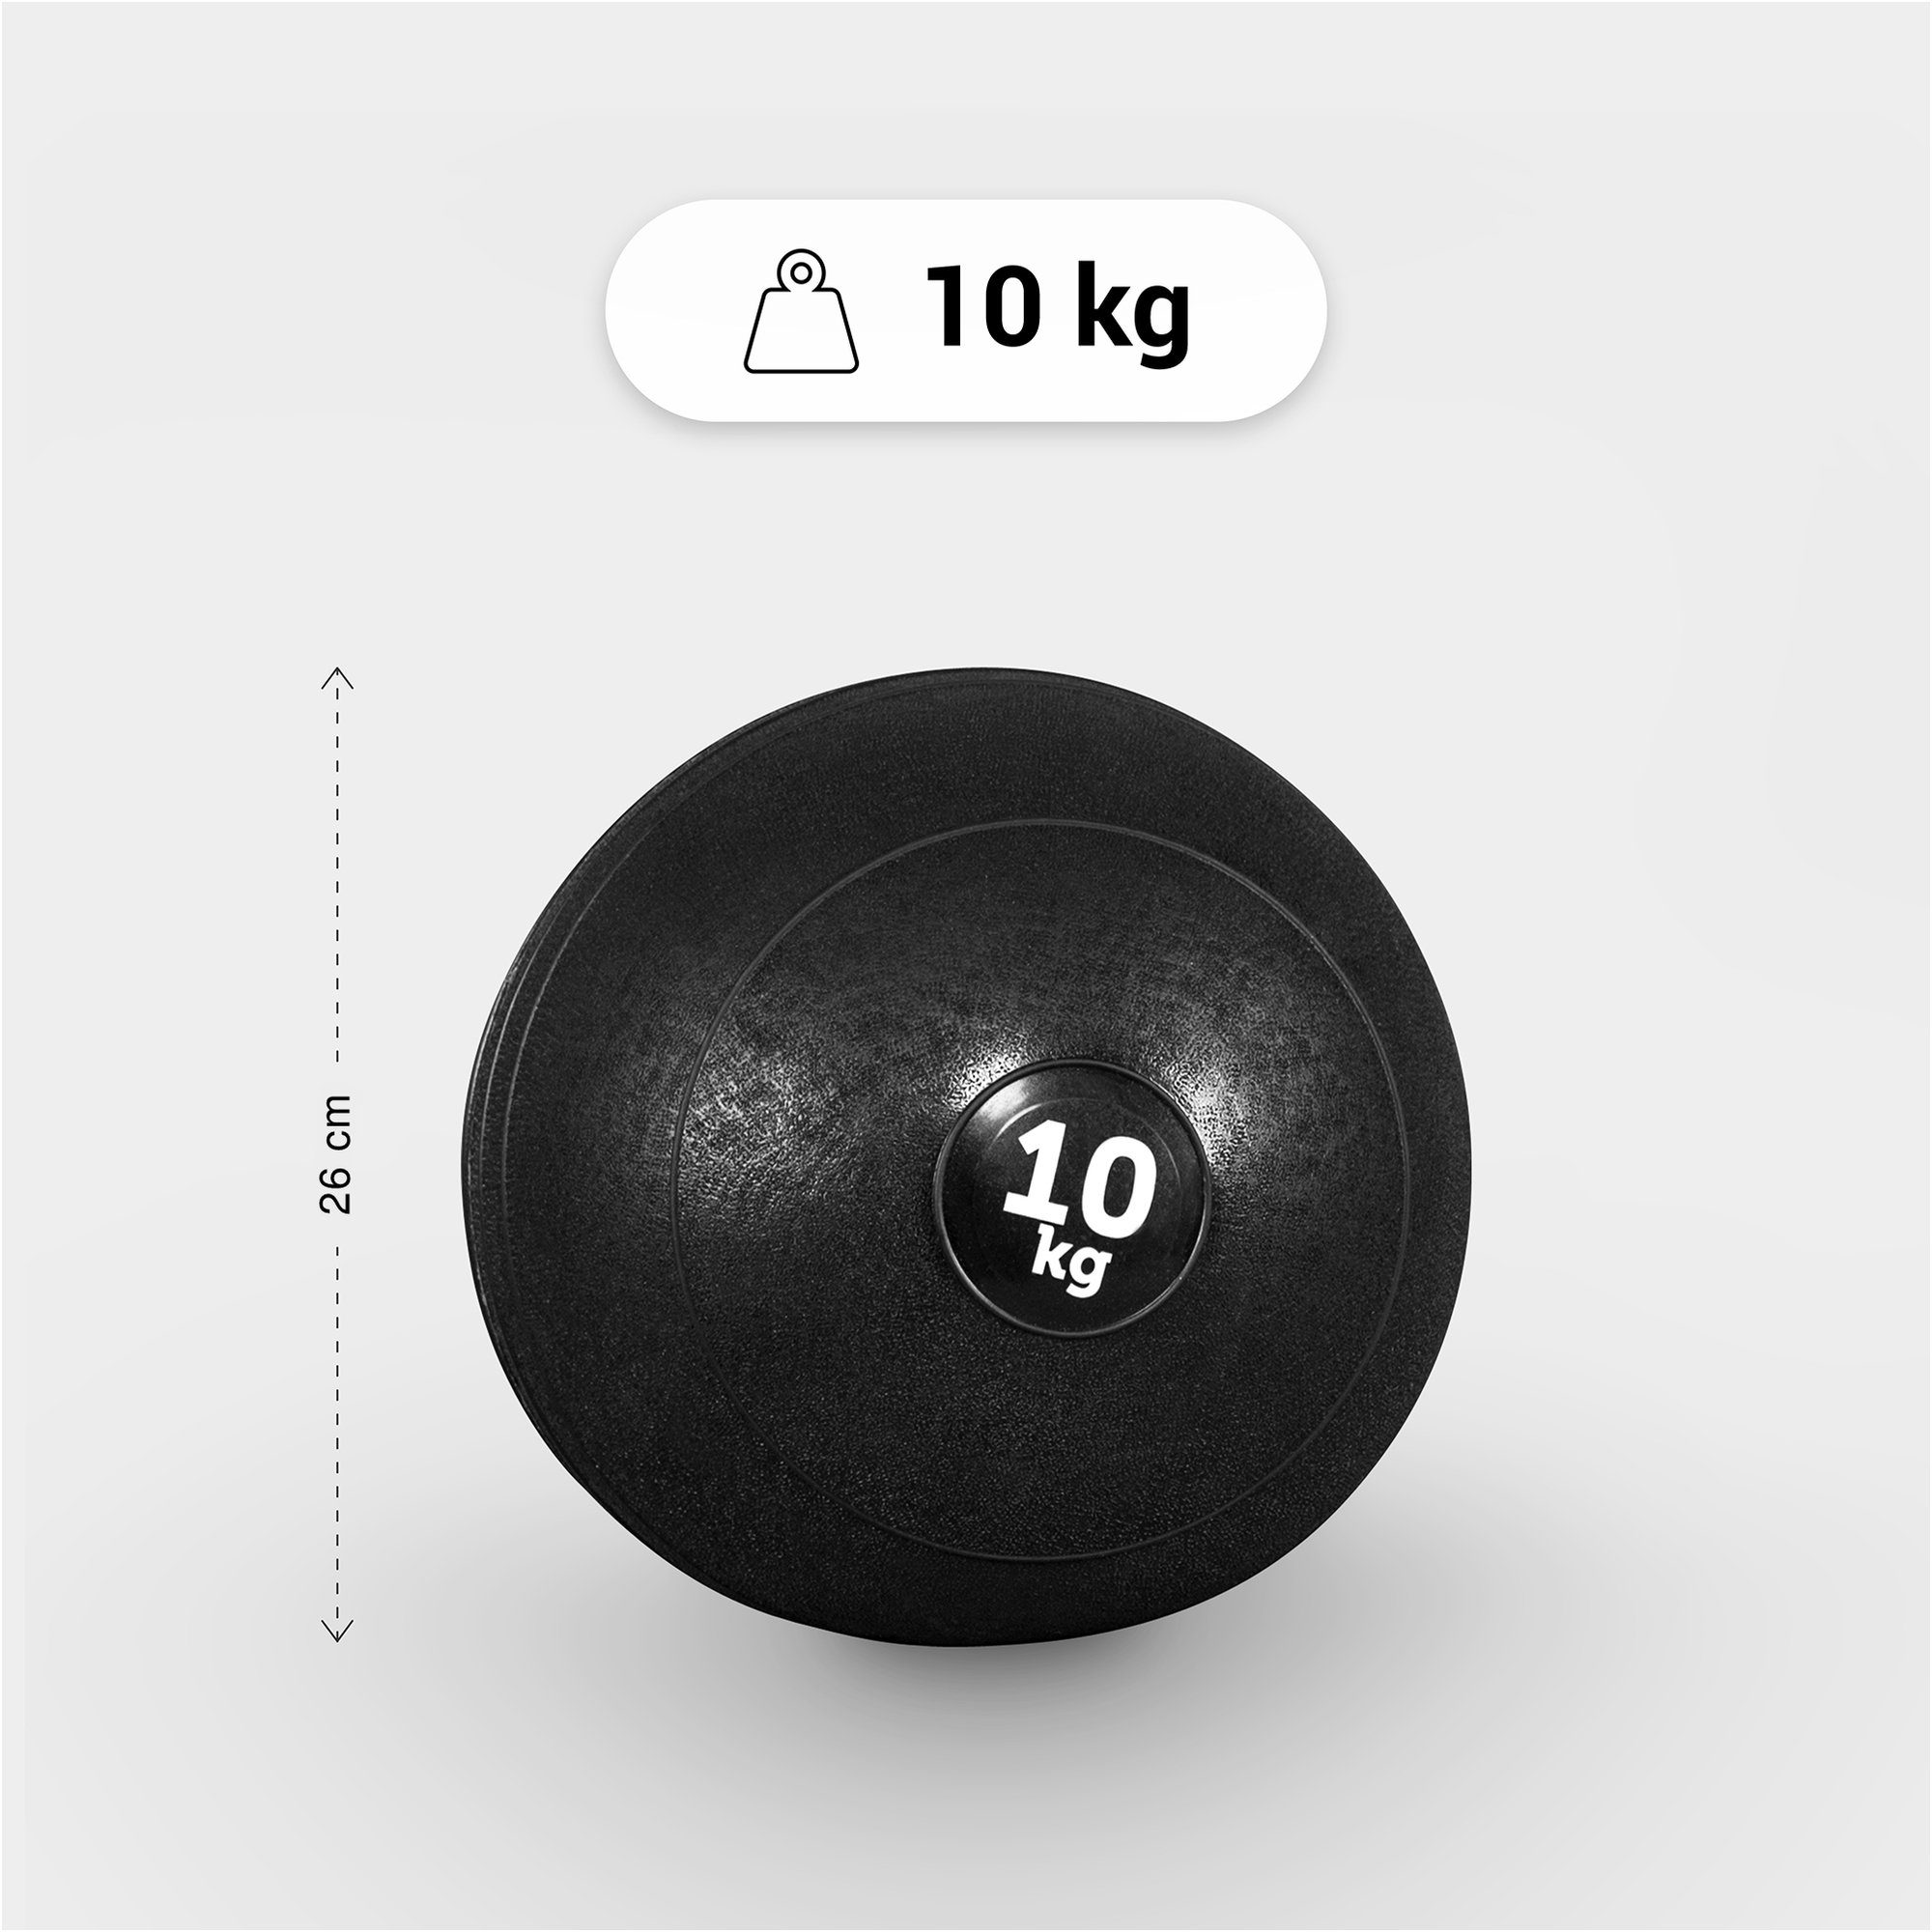 Medizinball 15kg, SPORTS 3kg, 20kg, Griffiger Einzeln/Set, GORILLA mit 5kg, Oberfläche 10kg, Set 7kg, 25kg